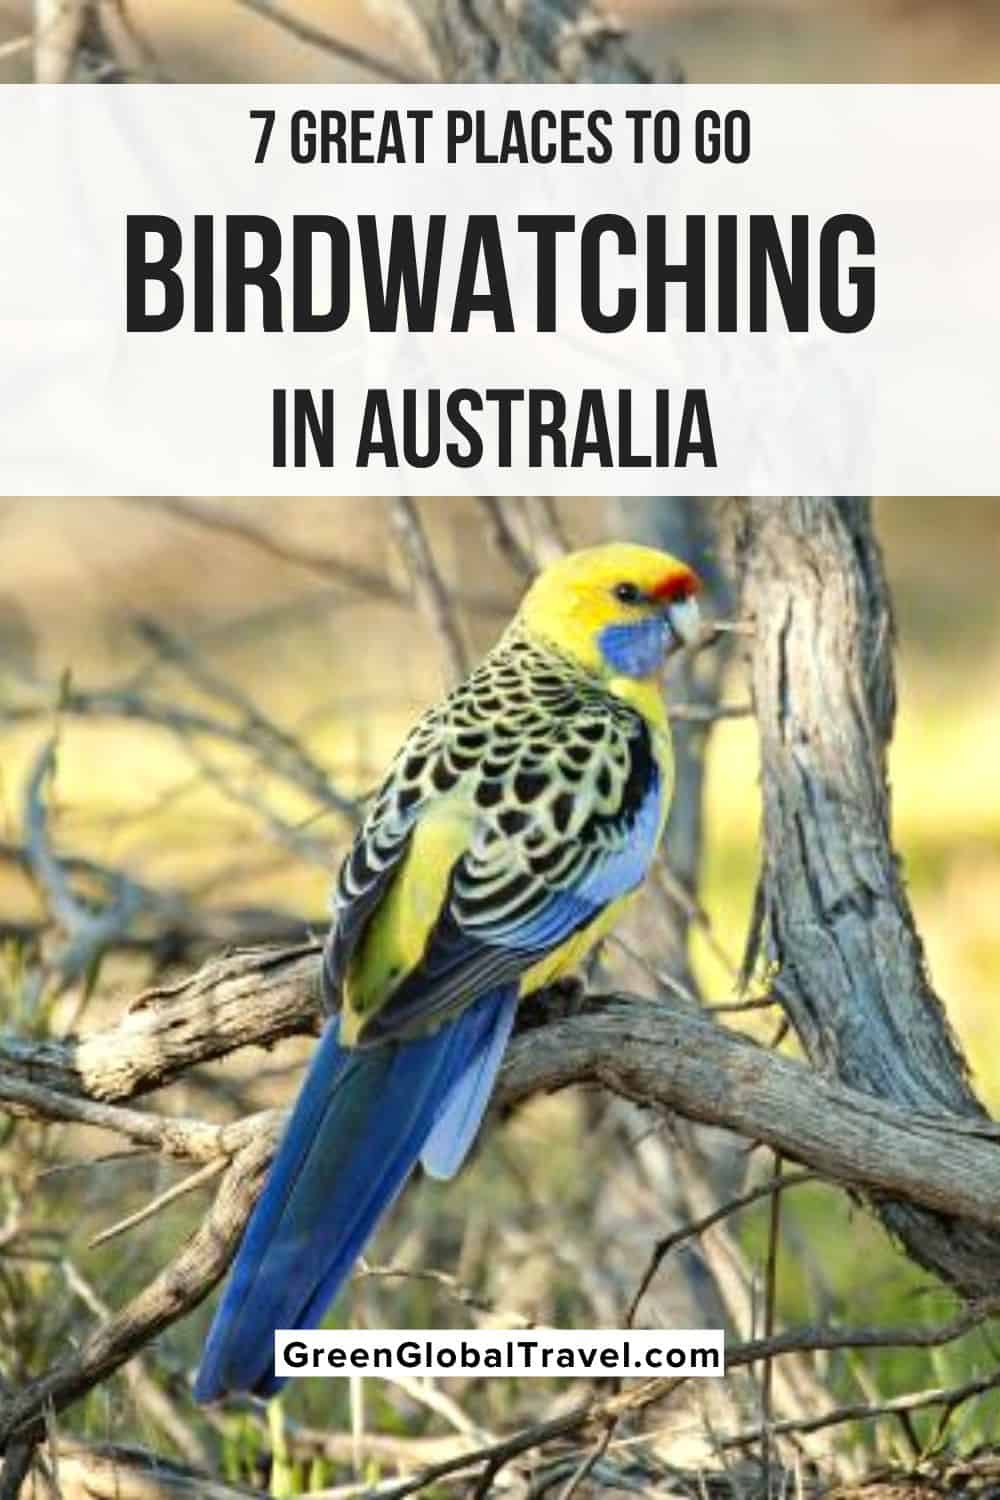 7 grands endroits pour observer les oiseaux en Australie, y compris le nord du Queensland, le parc national de Kakadu, le parc national de Mungo, la Tasmanie et plus encore !